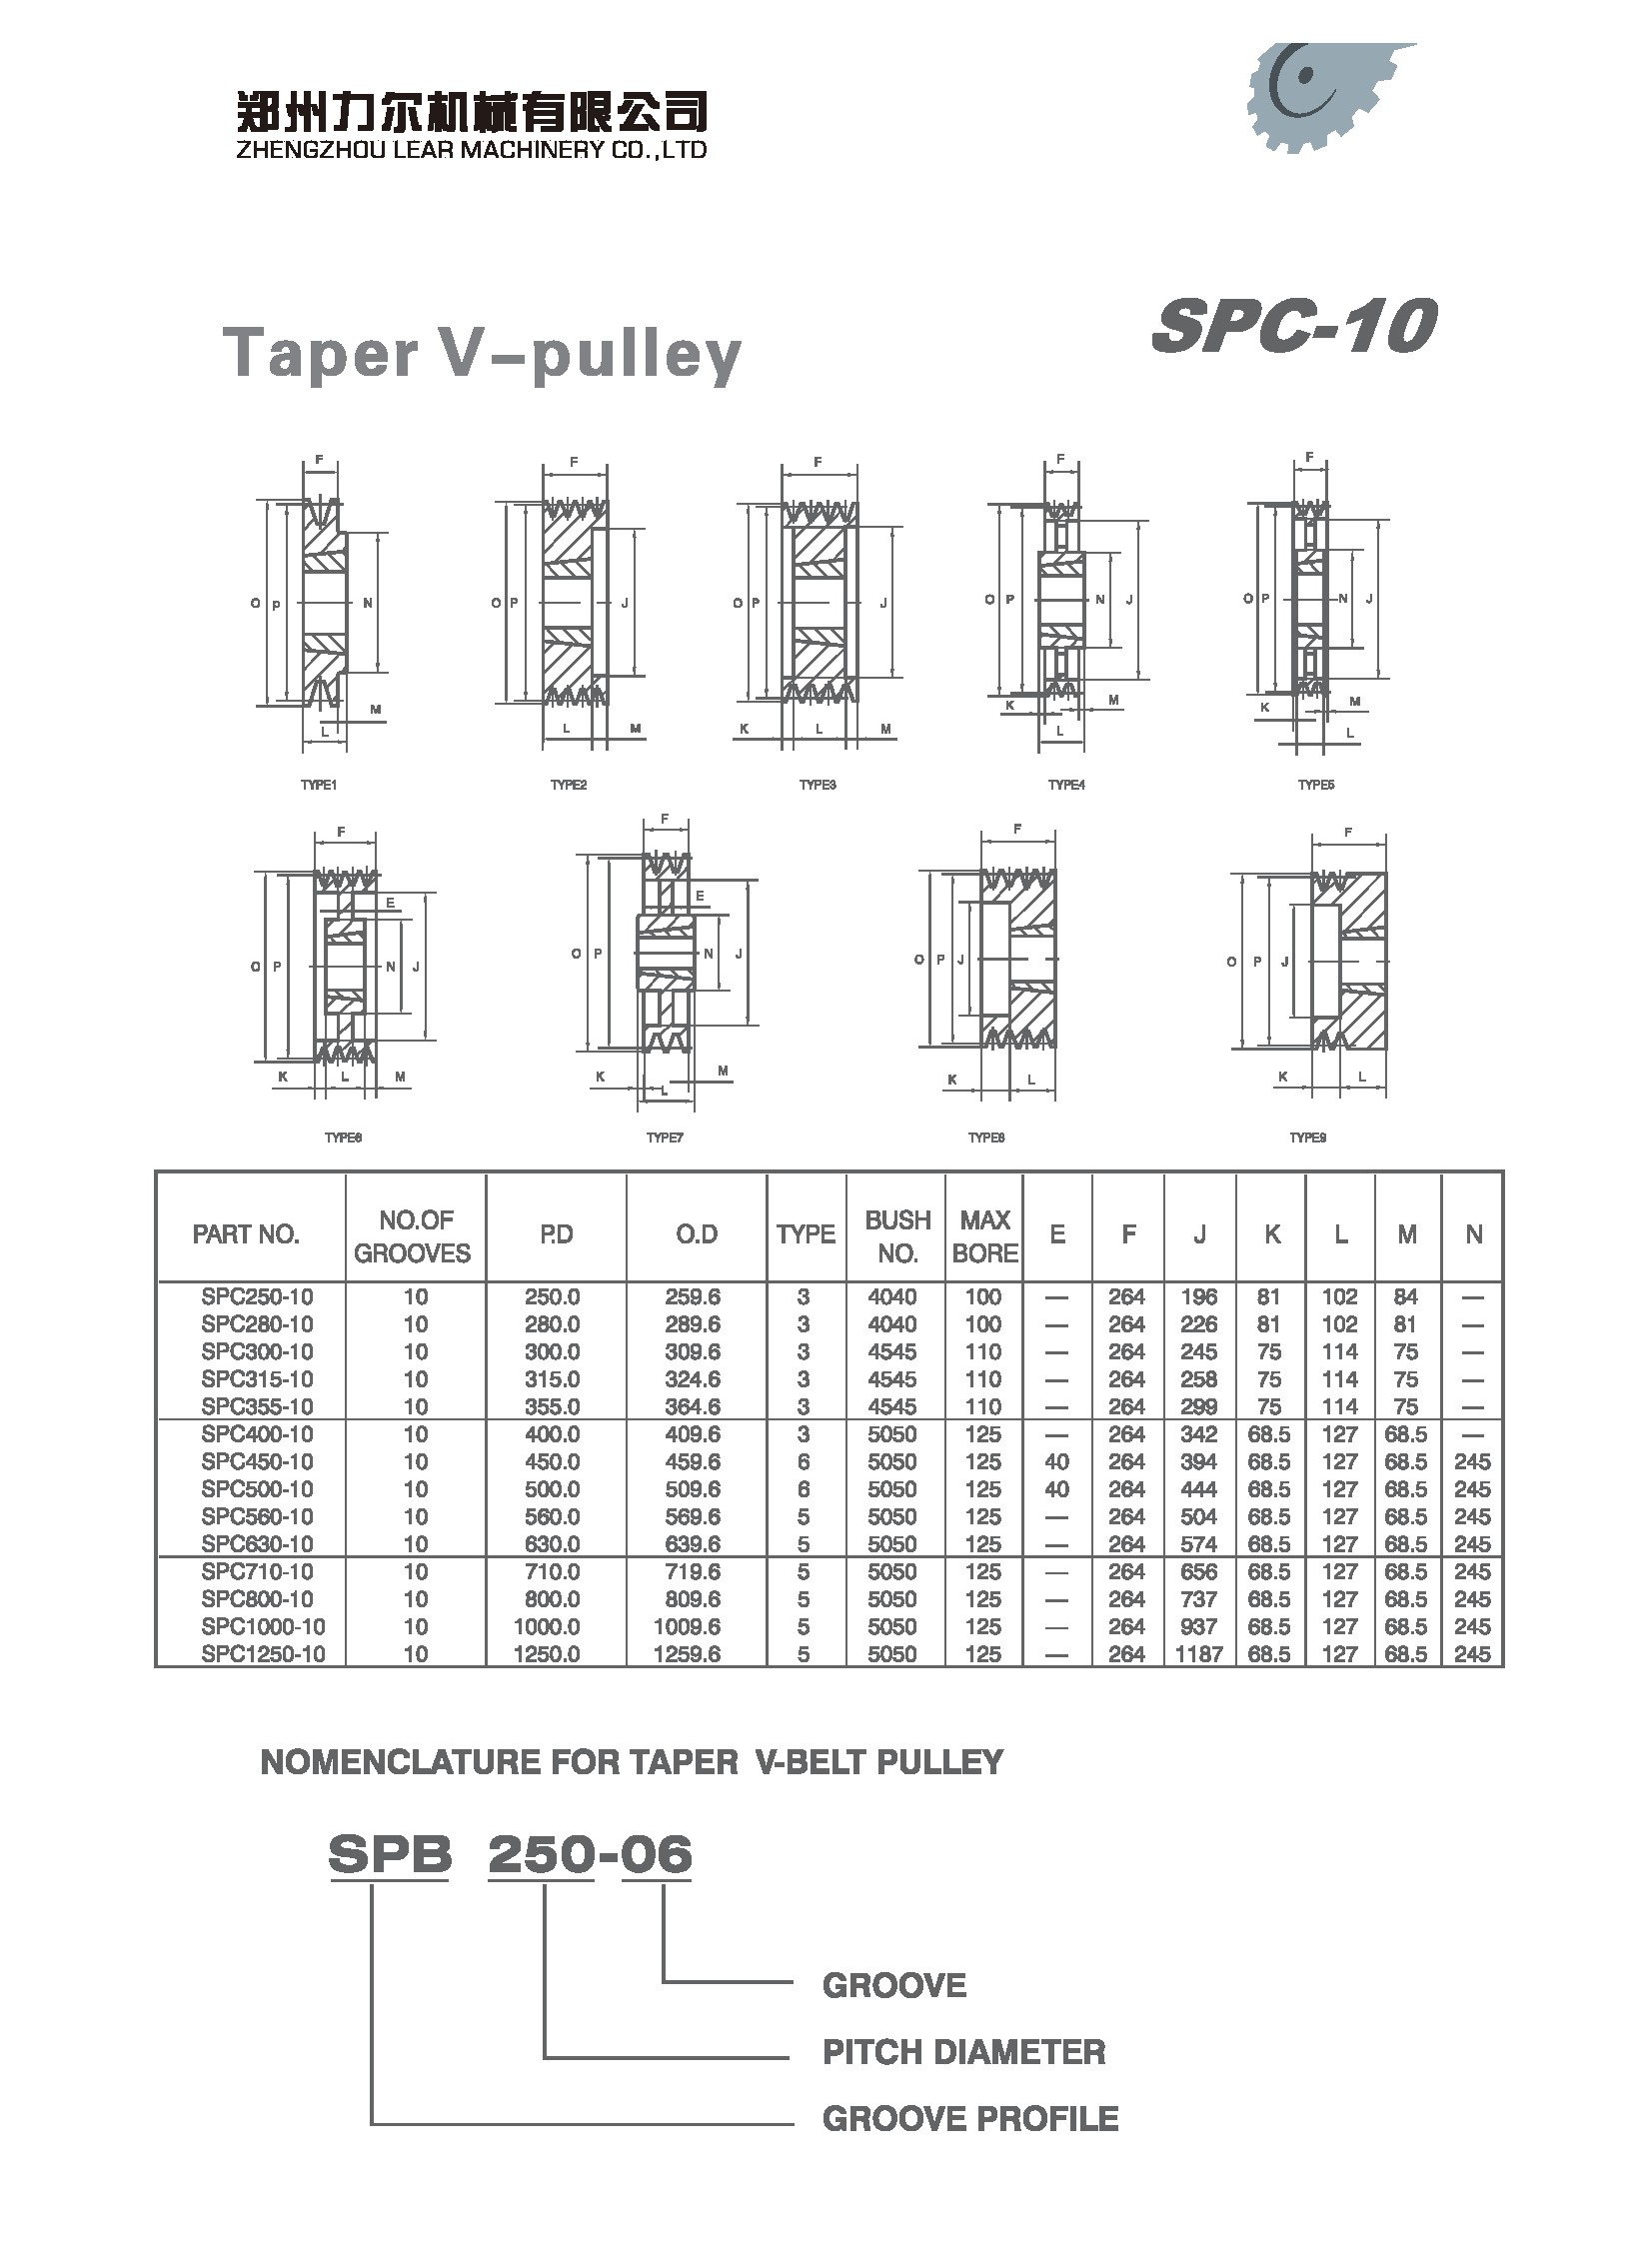 SPC250-10 | 
SPC280-10 | 
SPC300-10 | 
SPC315-10 | 
SPC355-10 | 
SPC400-10 | 
SPC450-10 | 
SPC500-10 | 
SPC560-10 | 
SPC630-10 | 
SPC710-10 | 
SPC800-10 | 
SPC1000-10 | 
SPC1250-10 | 